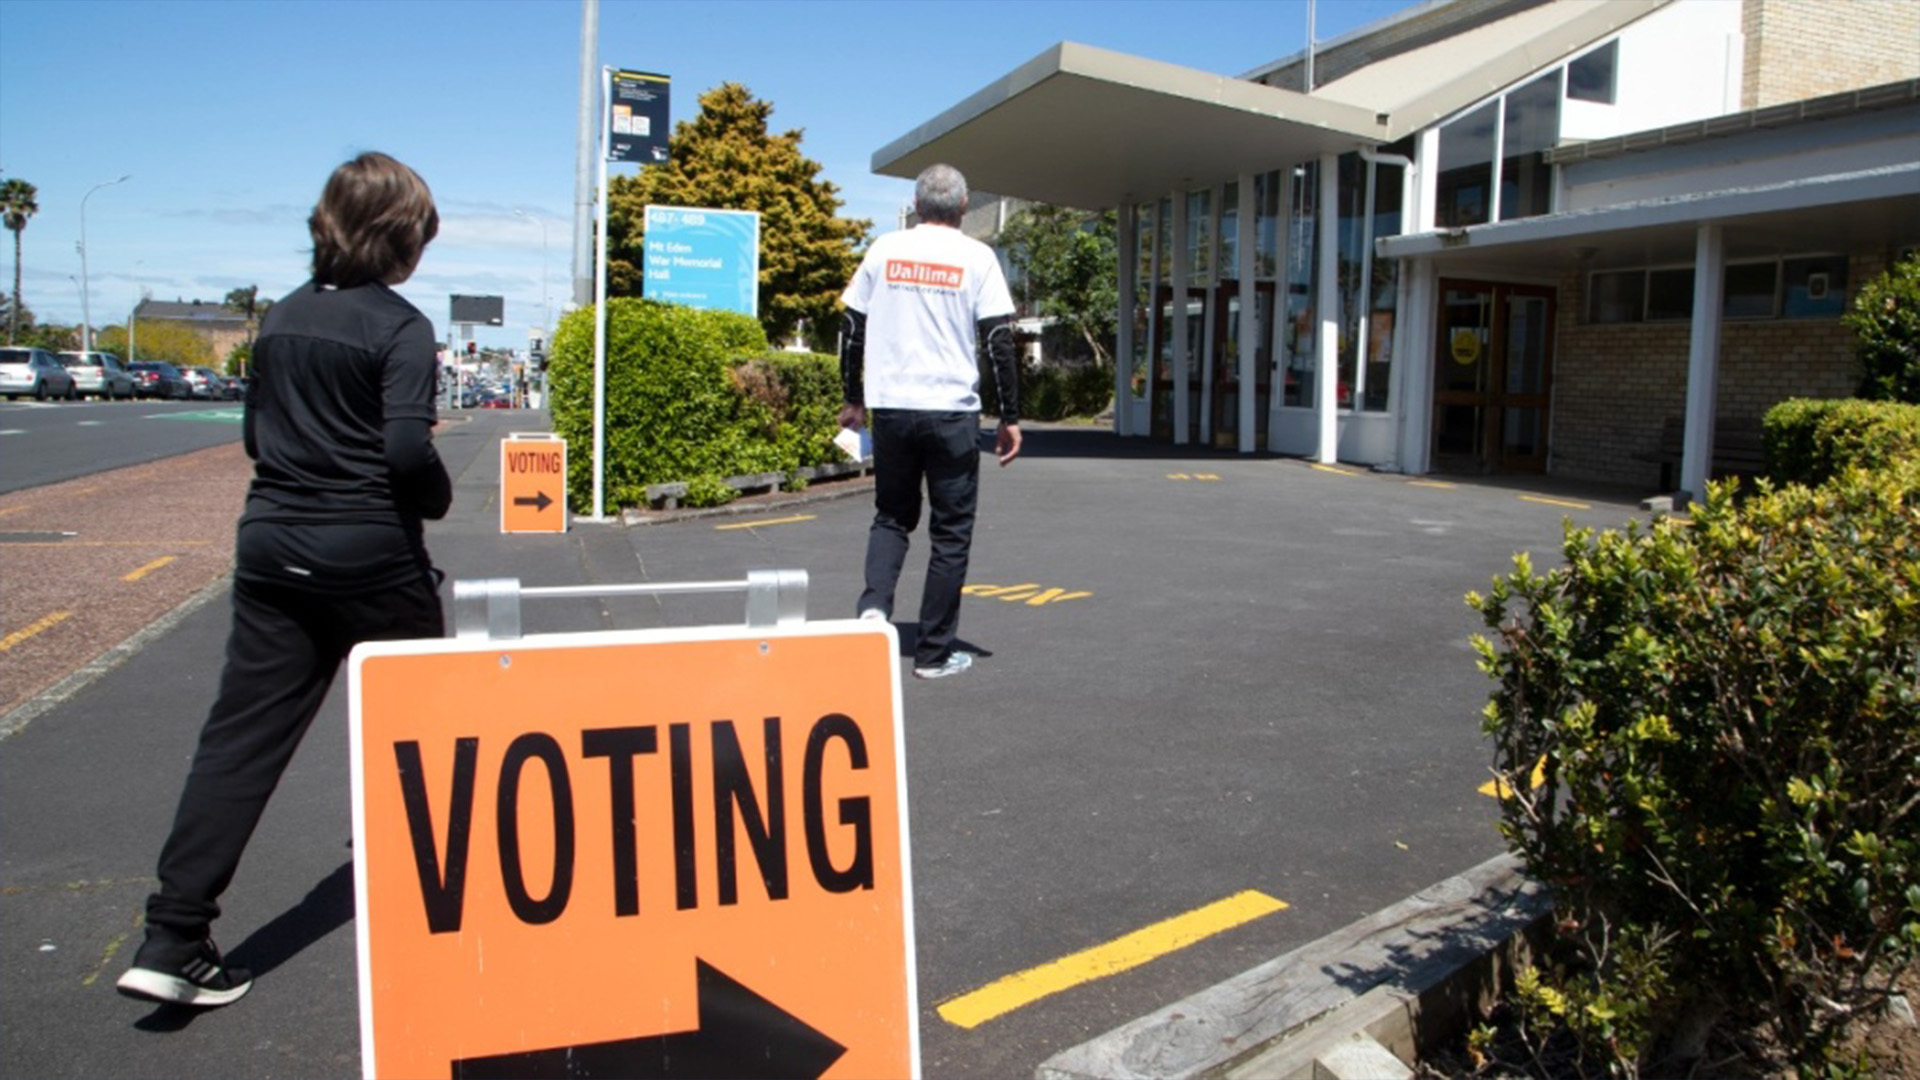 Les législateurs néo-zélandais voteront sur l'opportunité d'abaisser l'âge de vote national de 18 à 16 ans, a déclaré lundi la première ministre Jacinda Ardern.